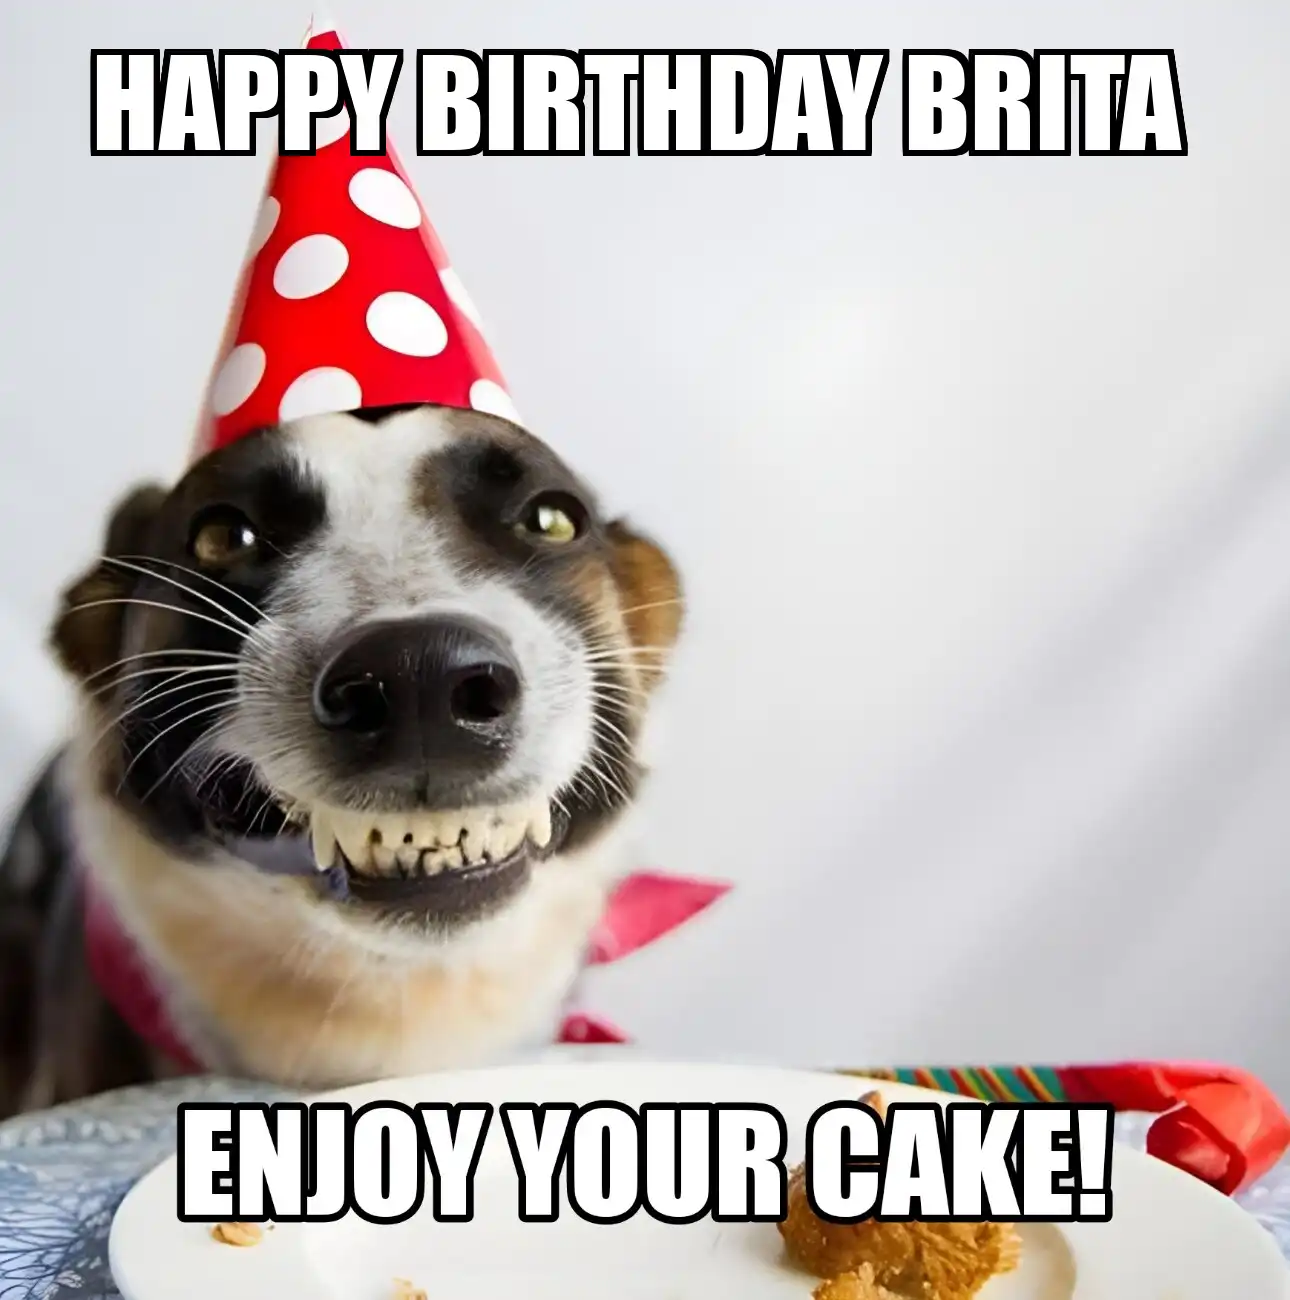 Happy Birthday Brita Enjoy Your Cake Dog Meme